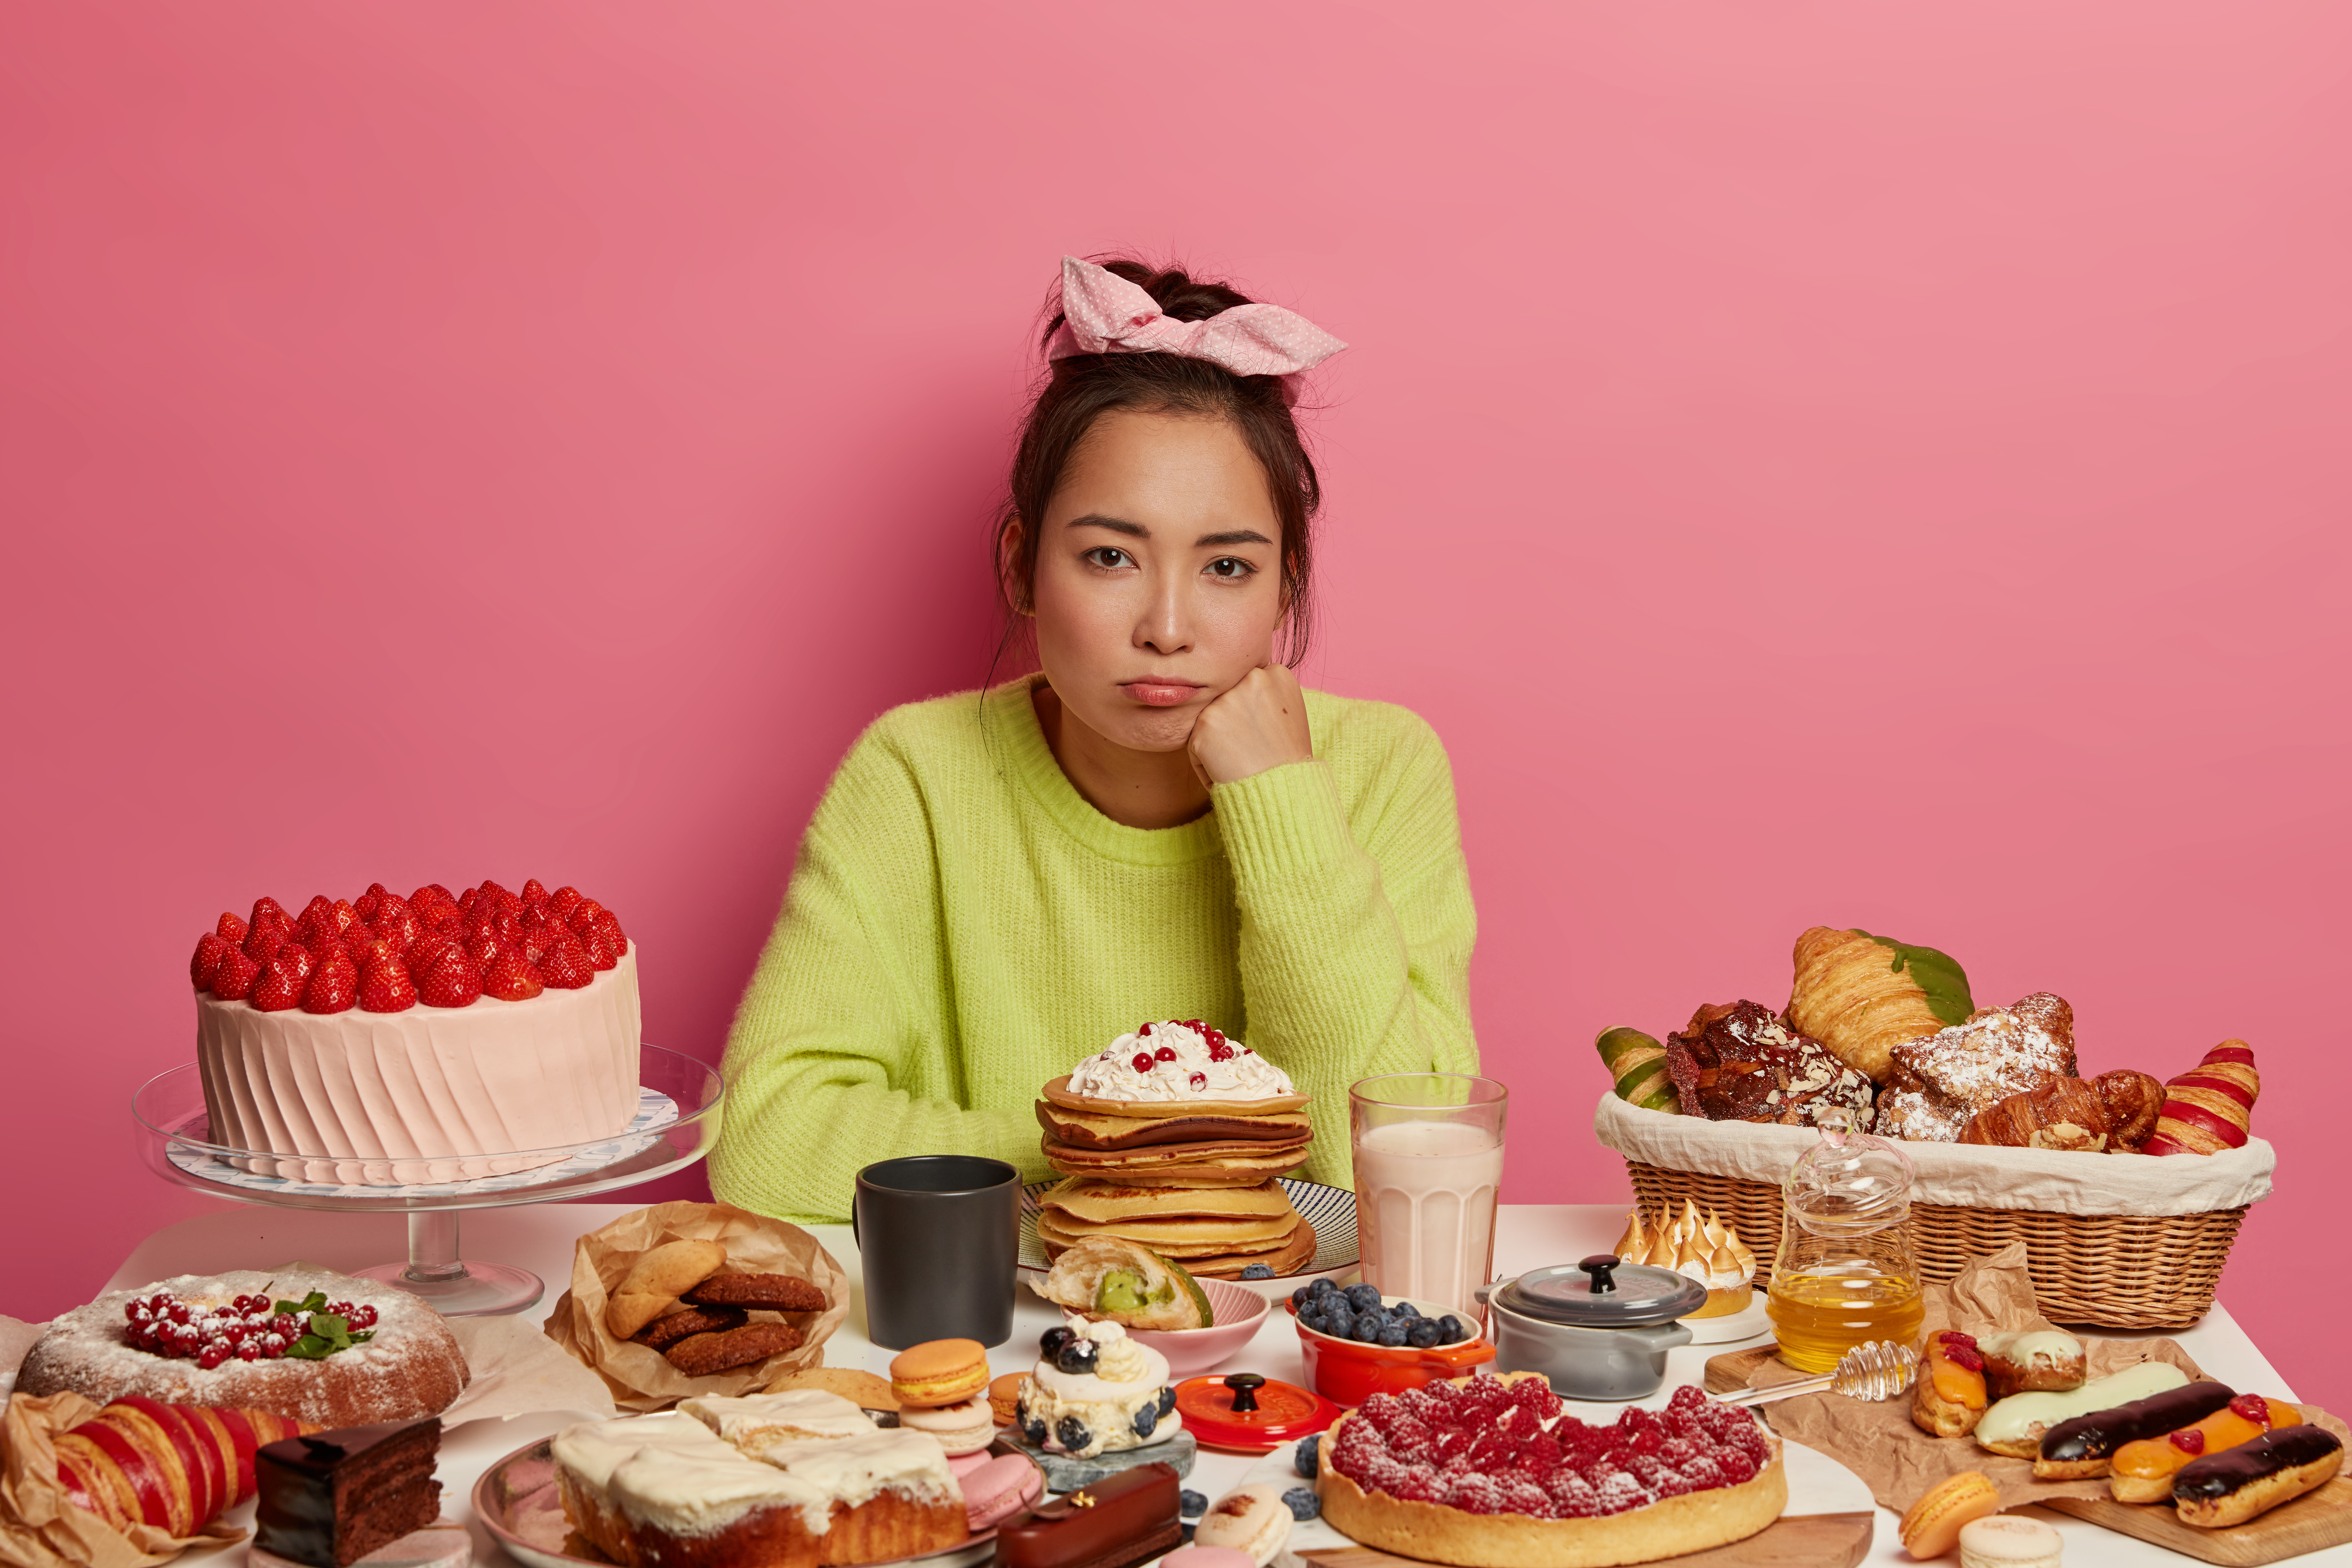 üzgün kadın şekerli yiyeceklerle dolu masanın önünde